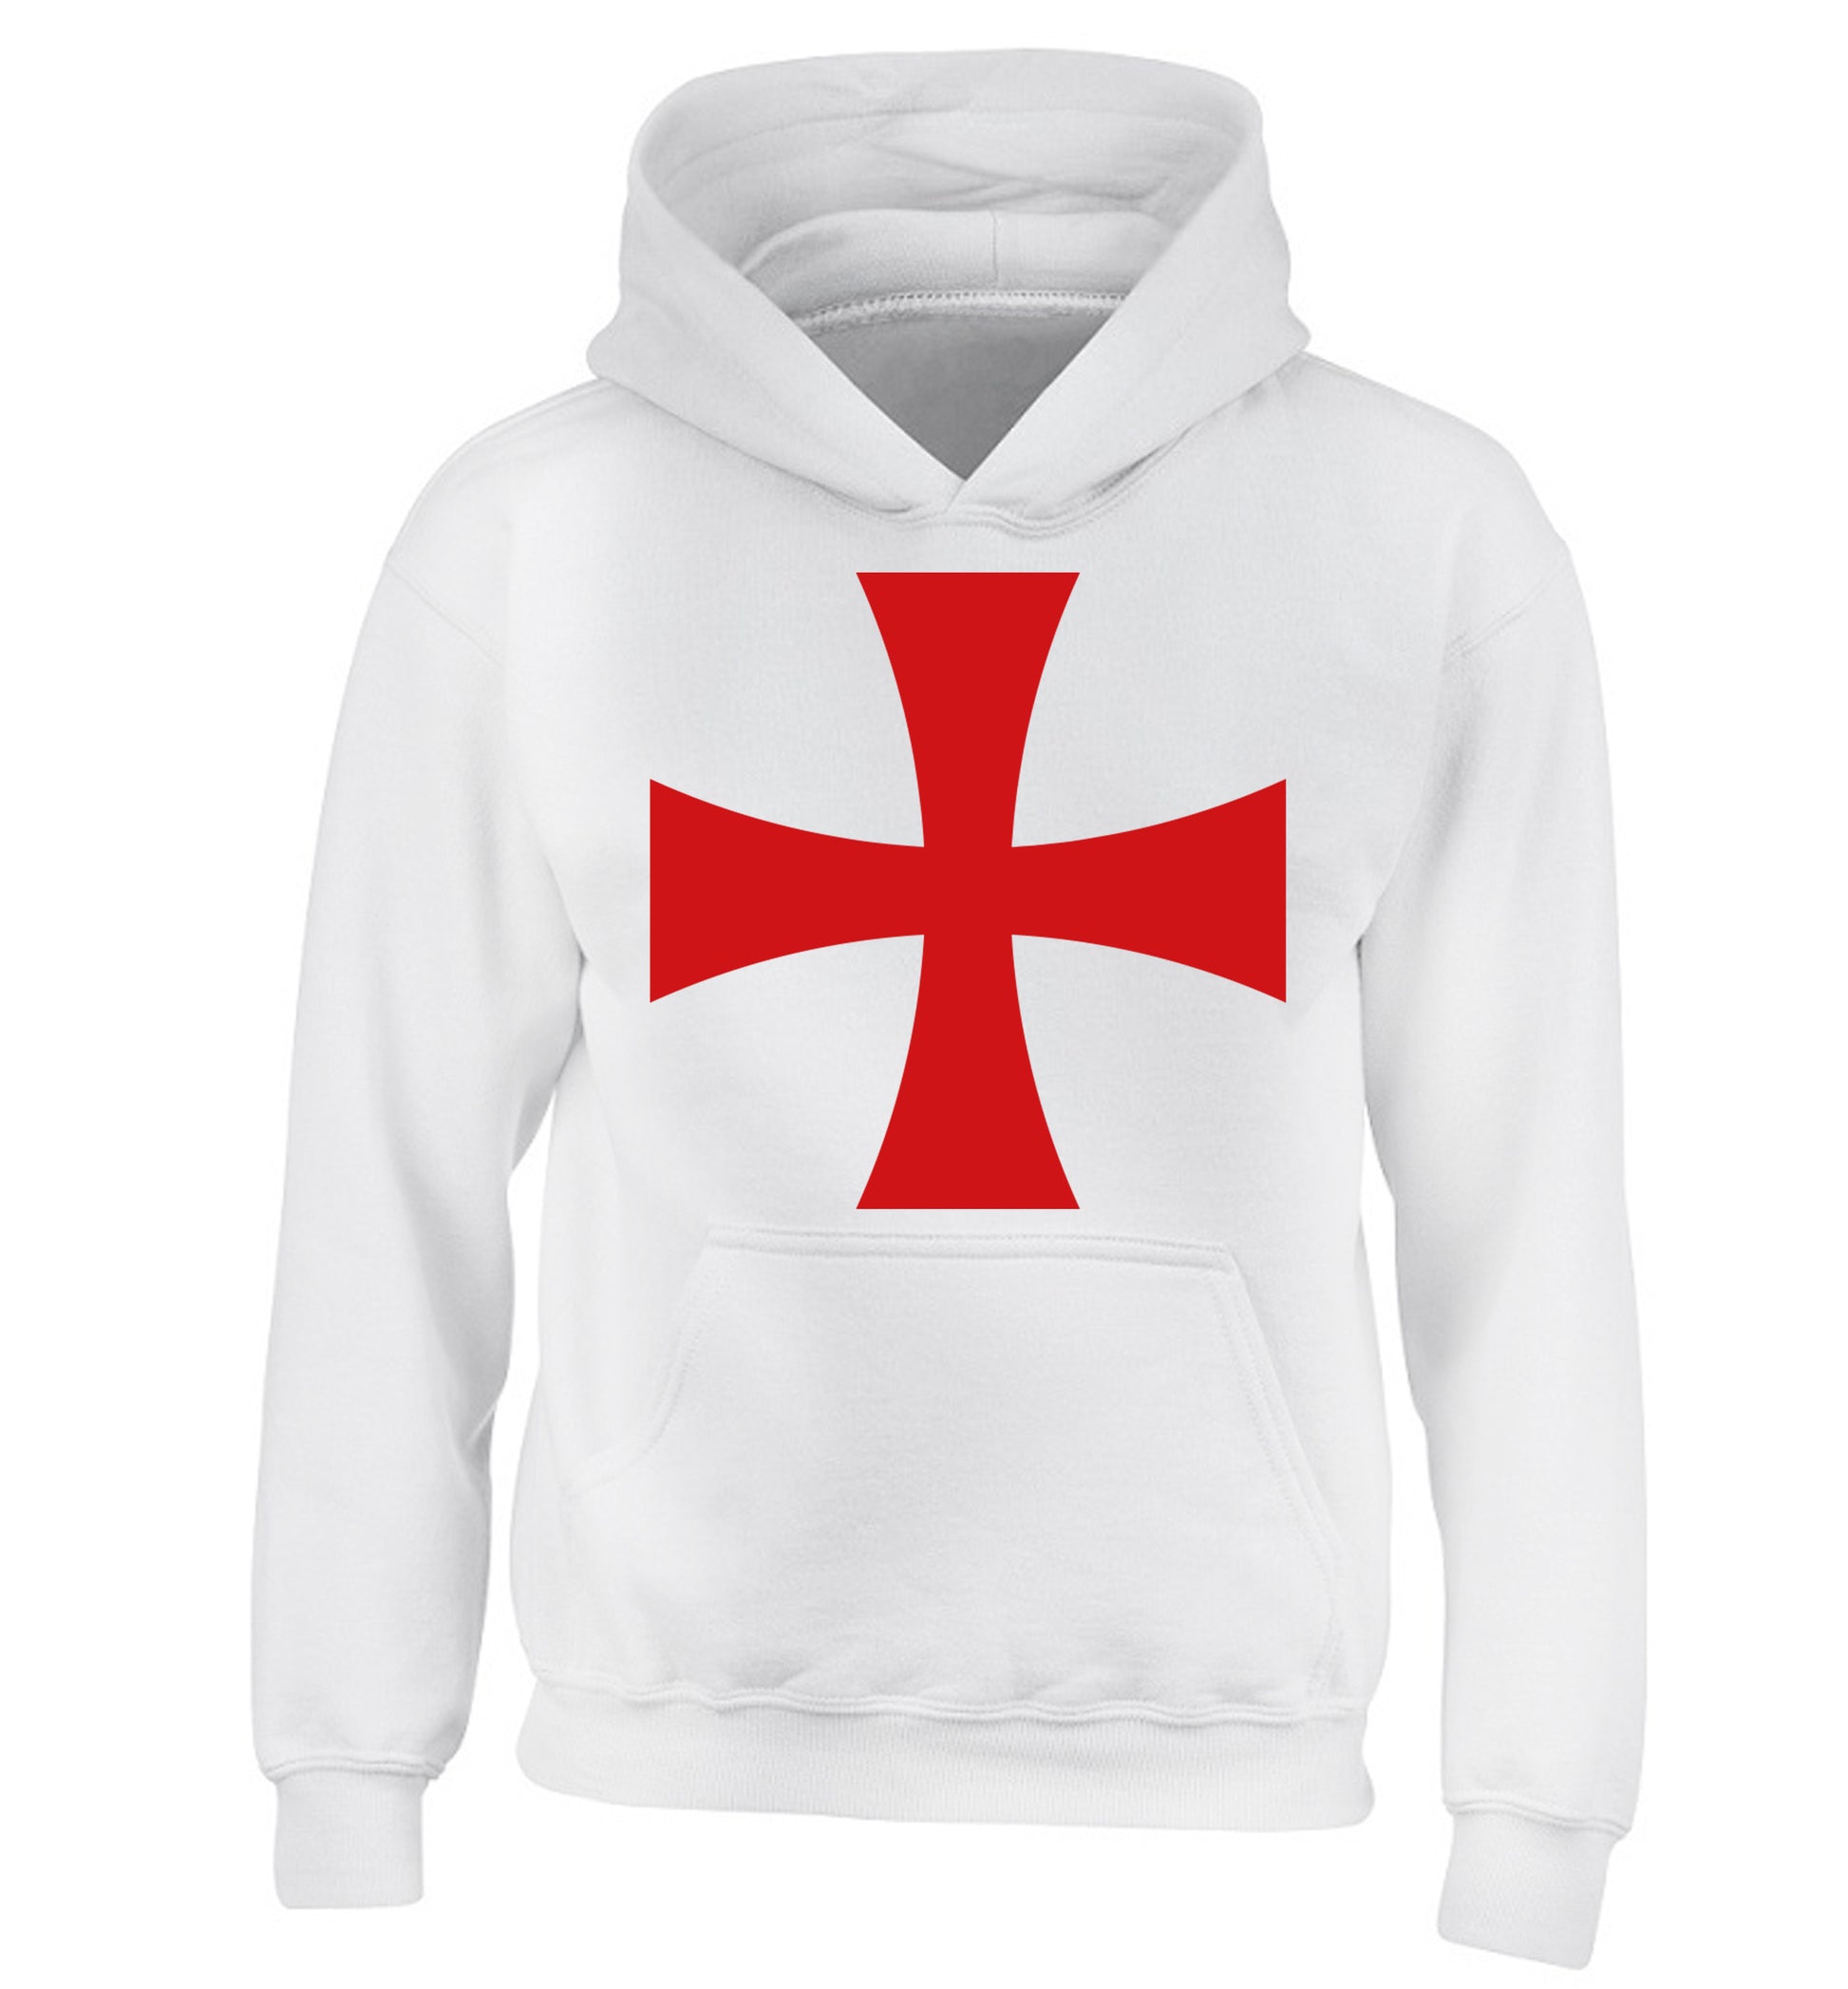 Knights Templar cross children's white hoodie 12-14 Years